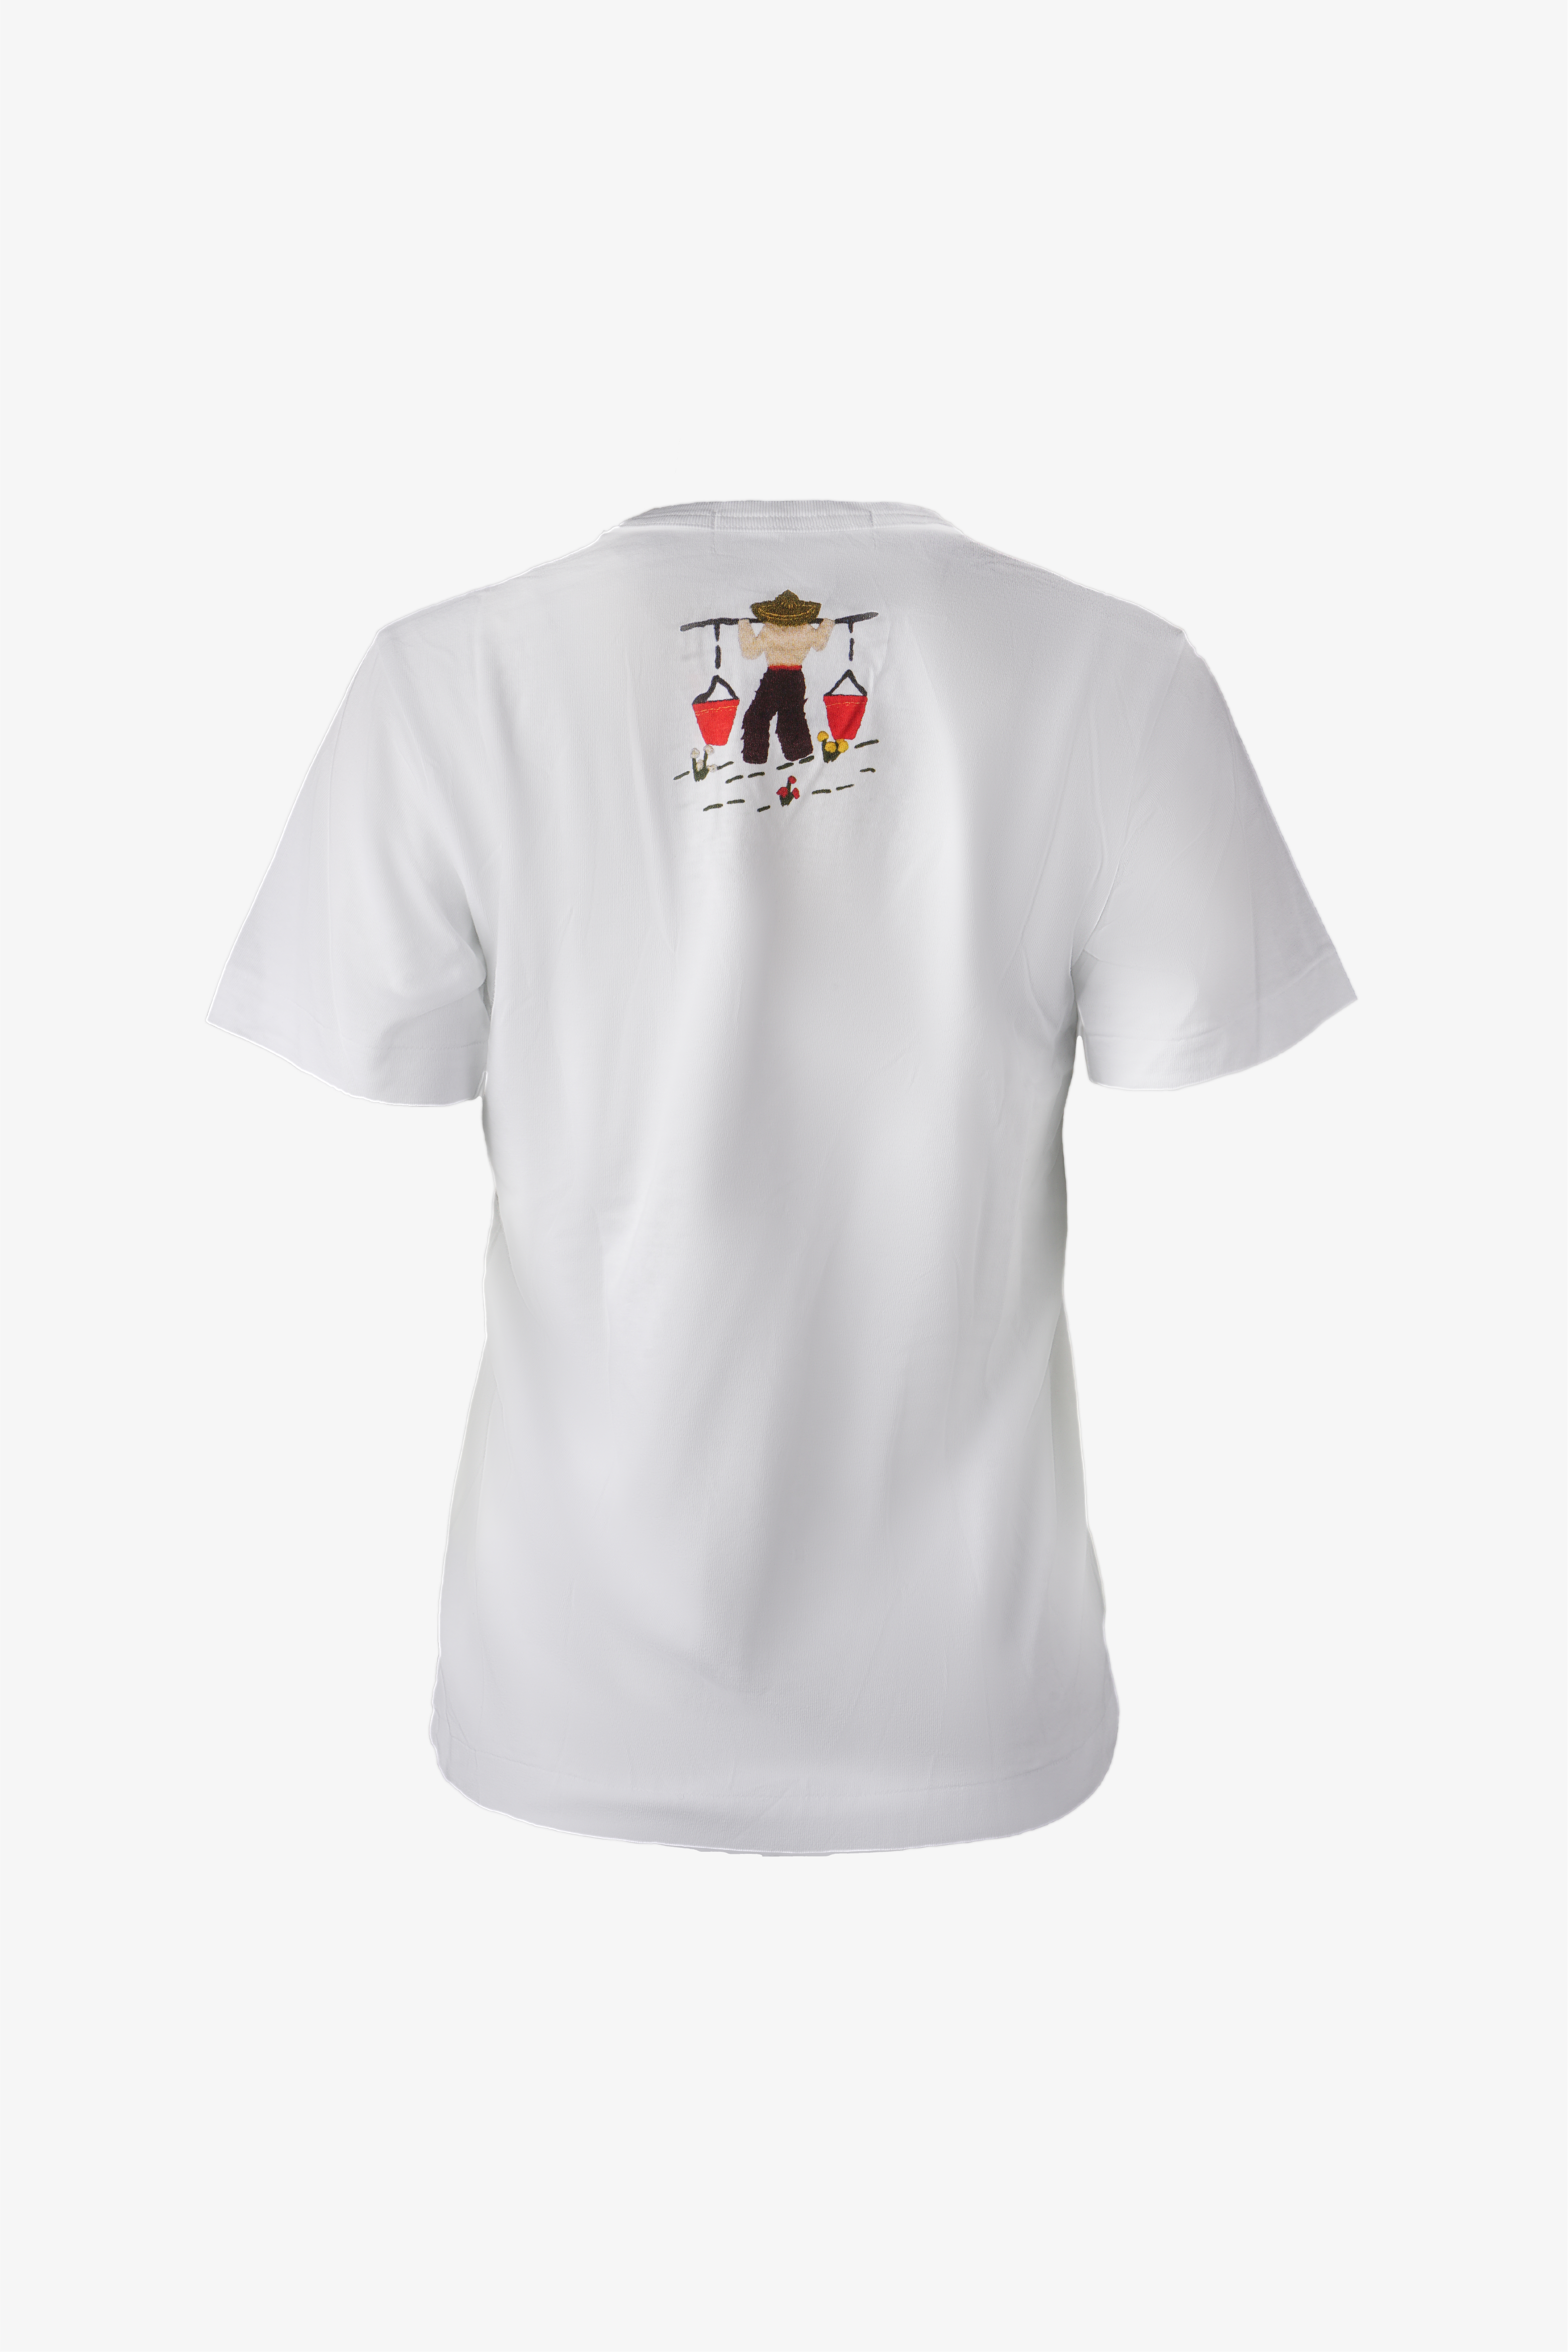 Selectshop FRAME - COMME DES GARÇONS GIRL T-Shirts T-Shirts Dubai